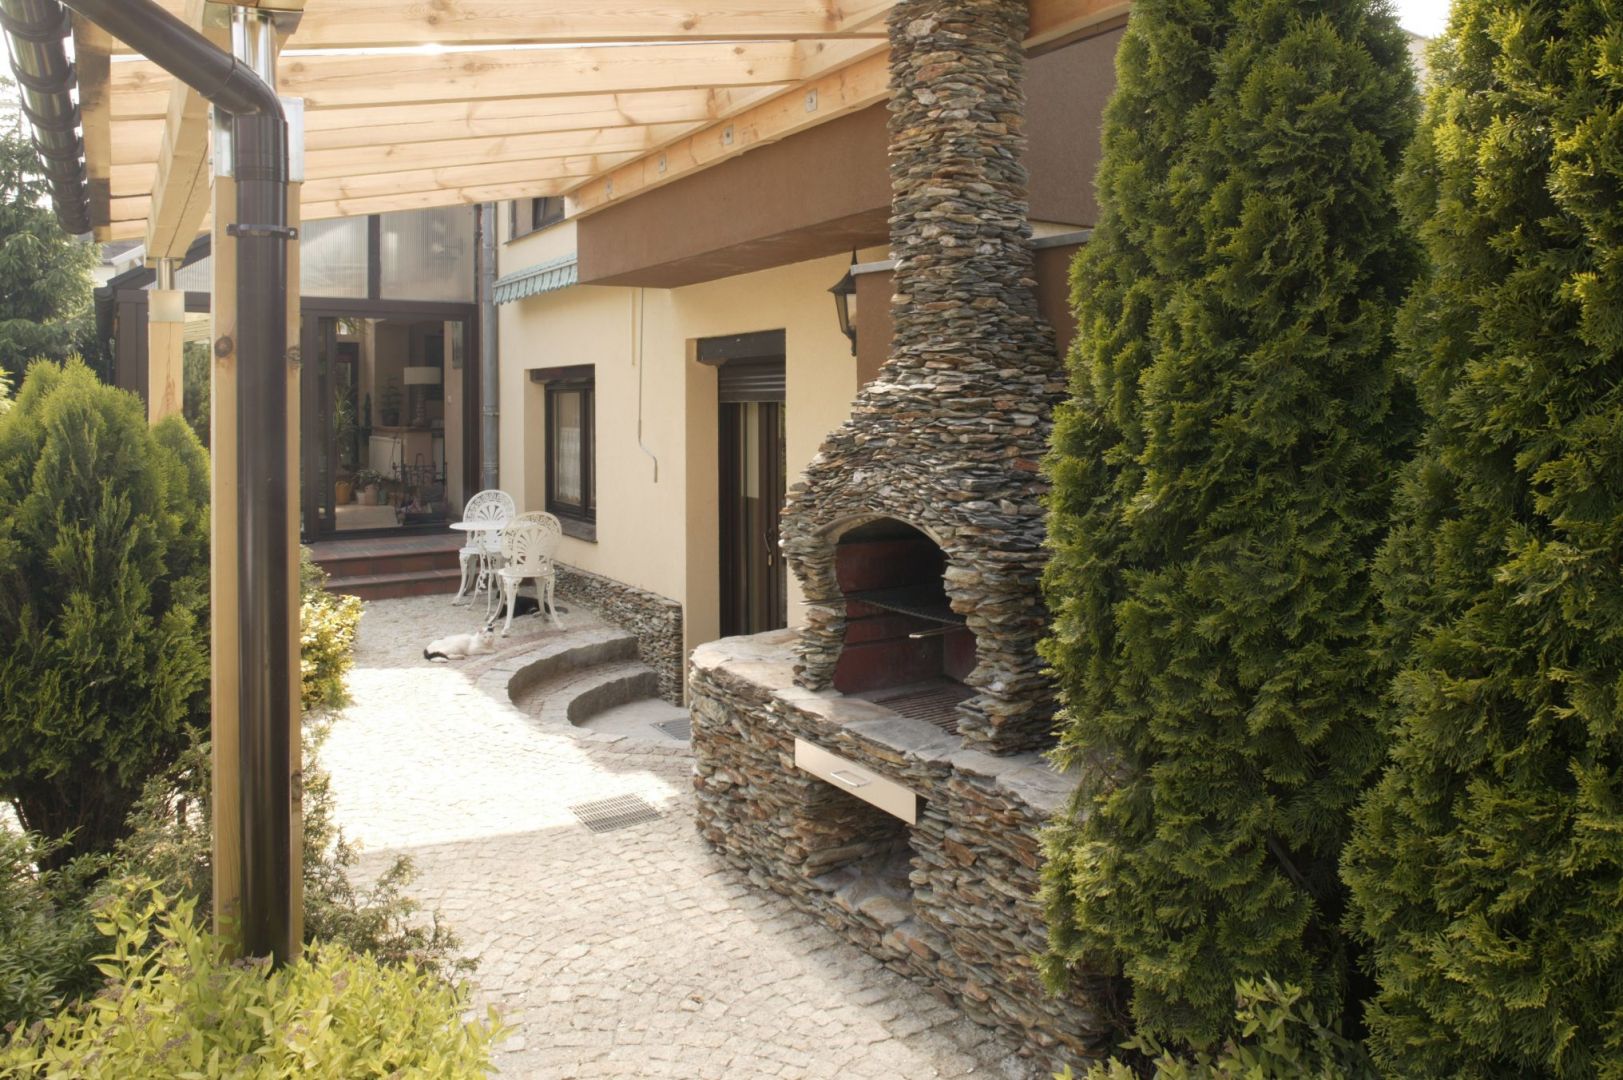 Głównym elementem części kulinarnej otoczenia domu jest wykonany z kamienia grill, który pełni również funkcję przydomowej wędzarni. Fot. Monika Filipiuk-Obałek